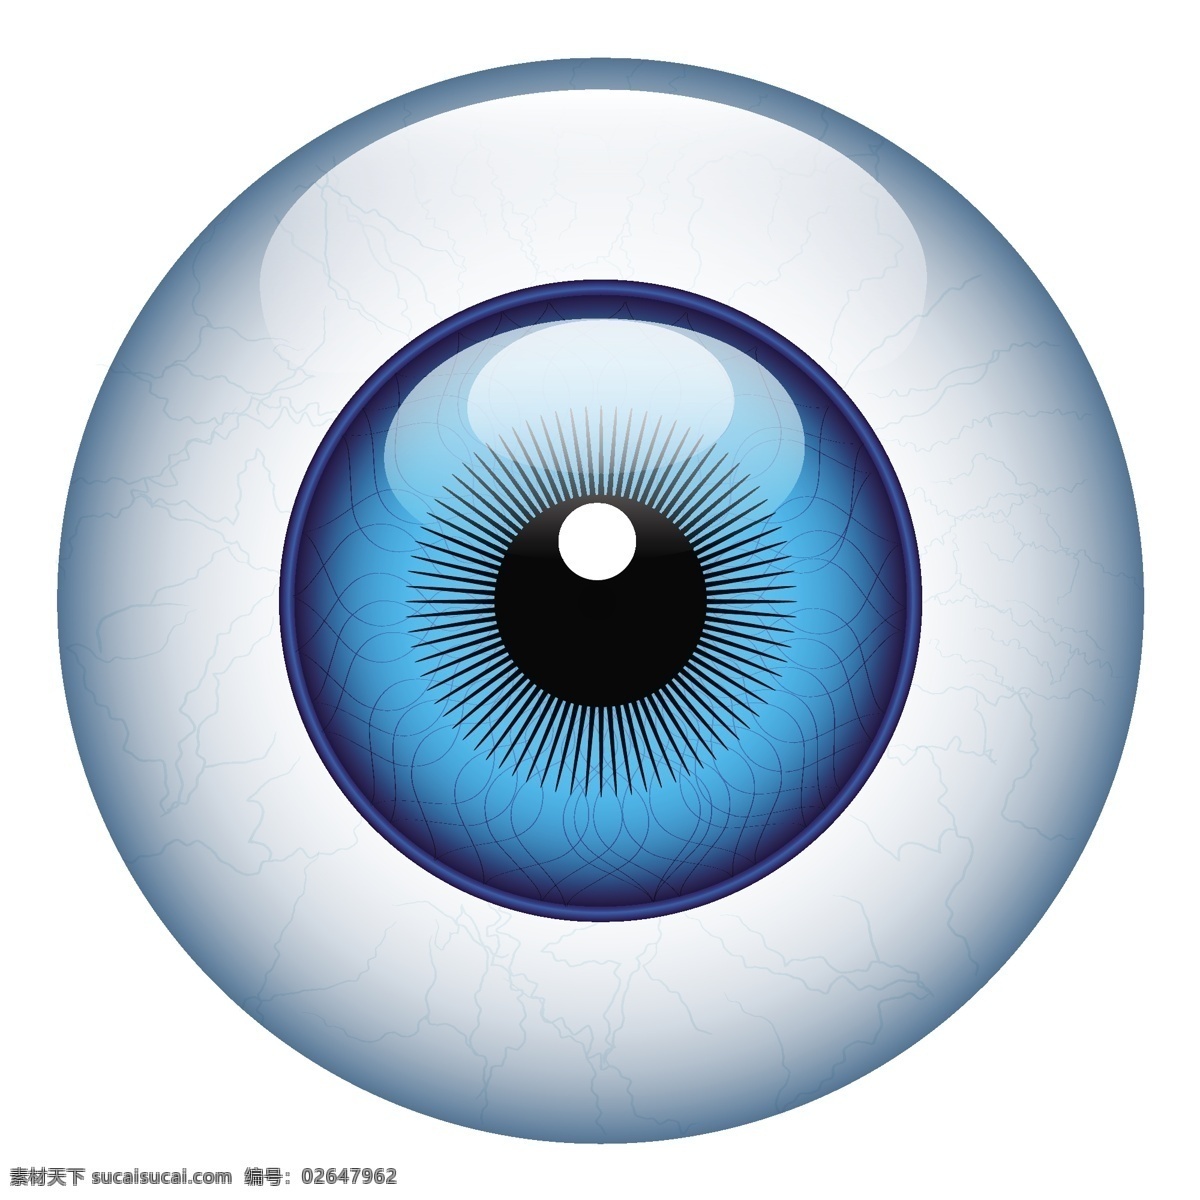 漫画 眼球 眼球的载体 眼球矢量 矢量 剪影 无 眼球载体设计 艺术 自由 蓝色 现实 世界的眼球 眼球的剪贴画 矢量图 其他矢量图